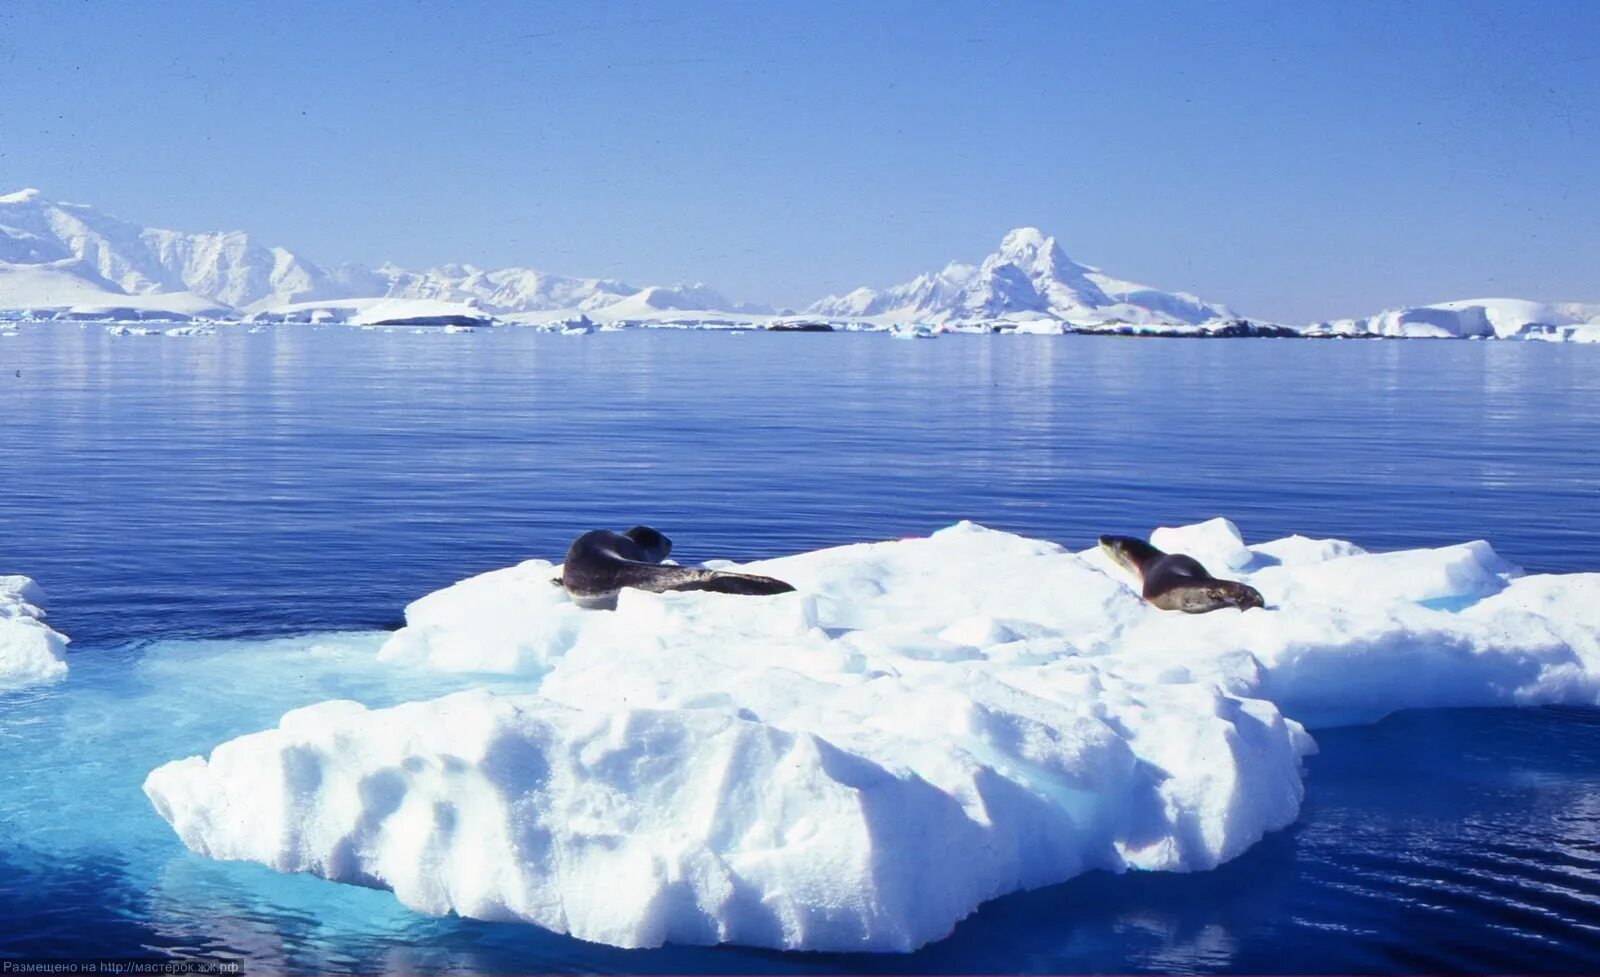 Море Уэдделла в Антарктиде. Море Уэдделла моря Южного океана. Море Уэдделла ледник. Море Уэдделла фото. Море росса какой океан